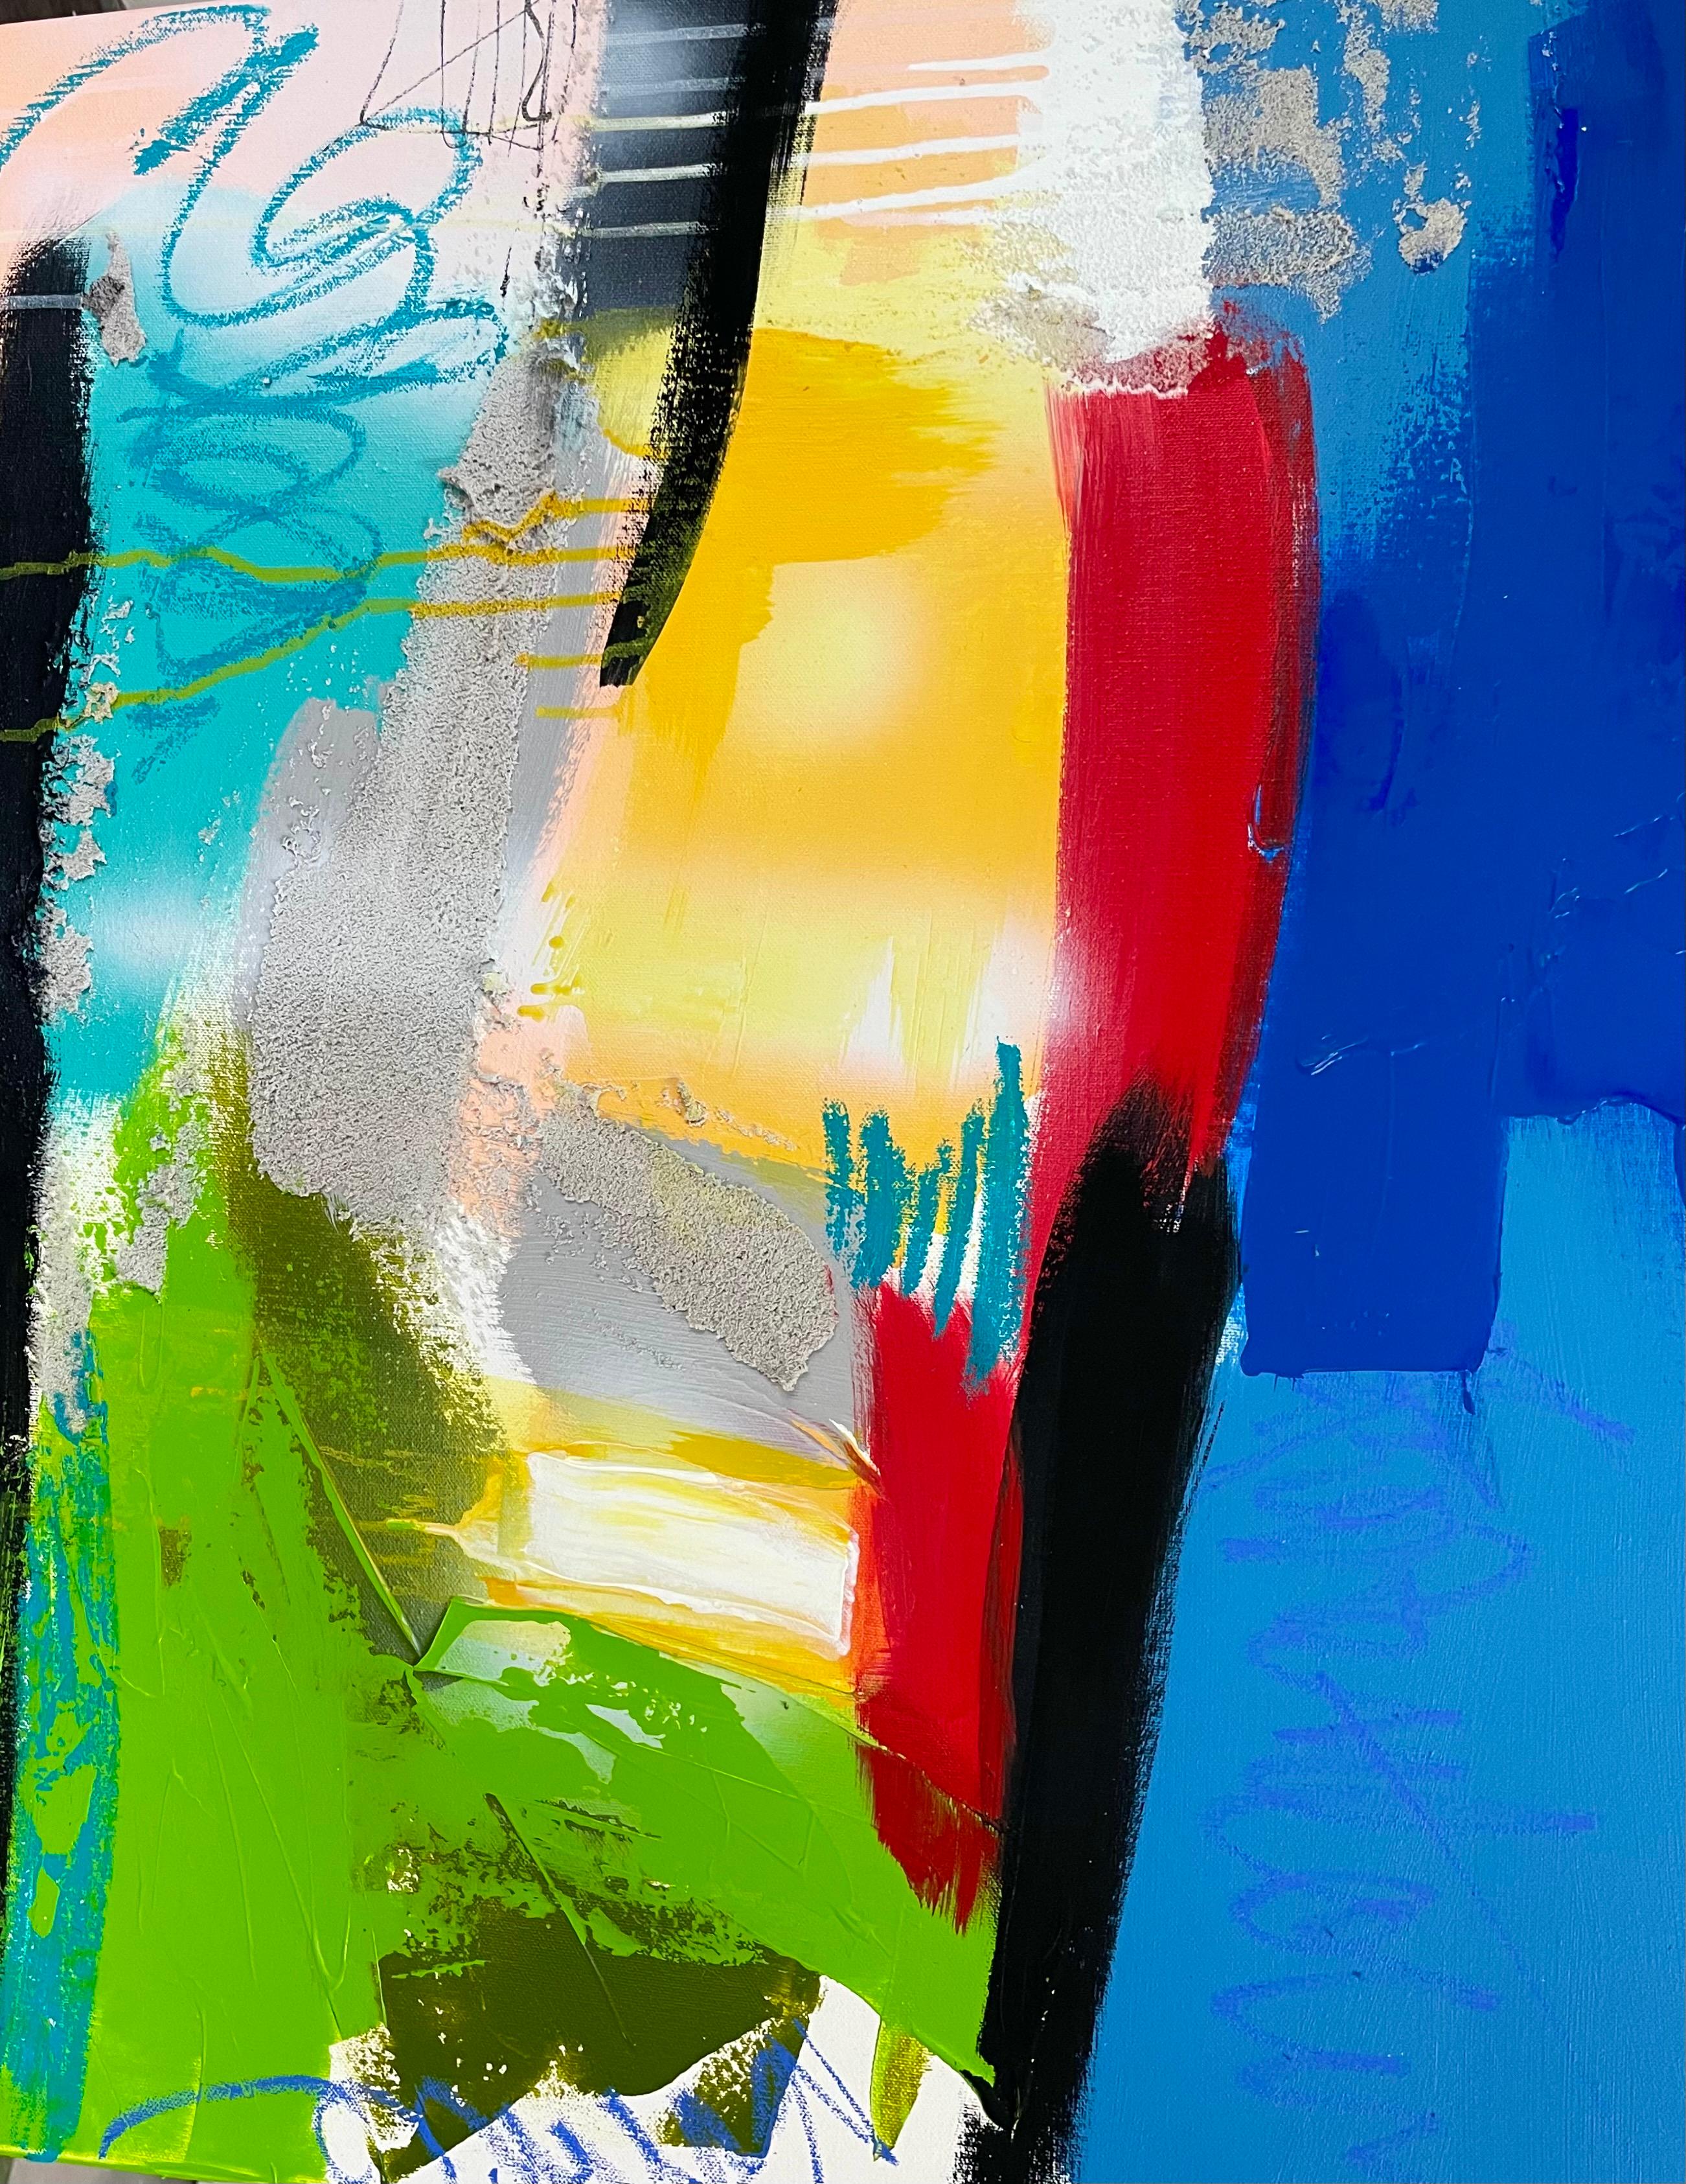 Abstract Painting Paddy Cohn - Altona 88  Acrylique, Technique mixte, 30 x 24, Couleurs, Nature, Livraison gratuite en solde